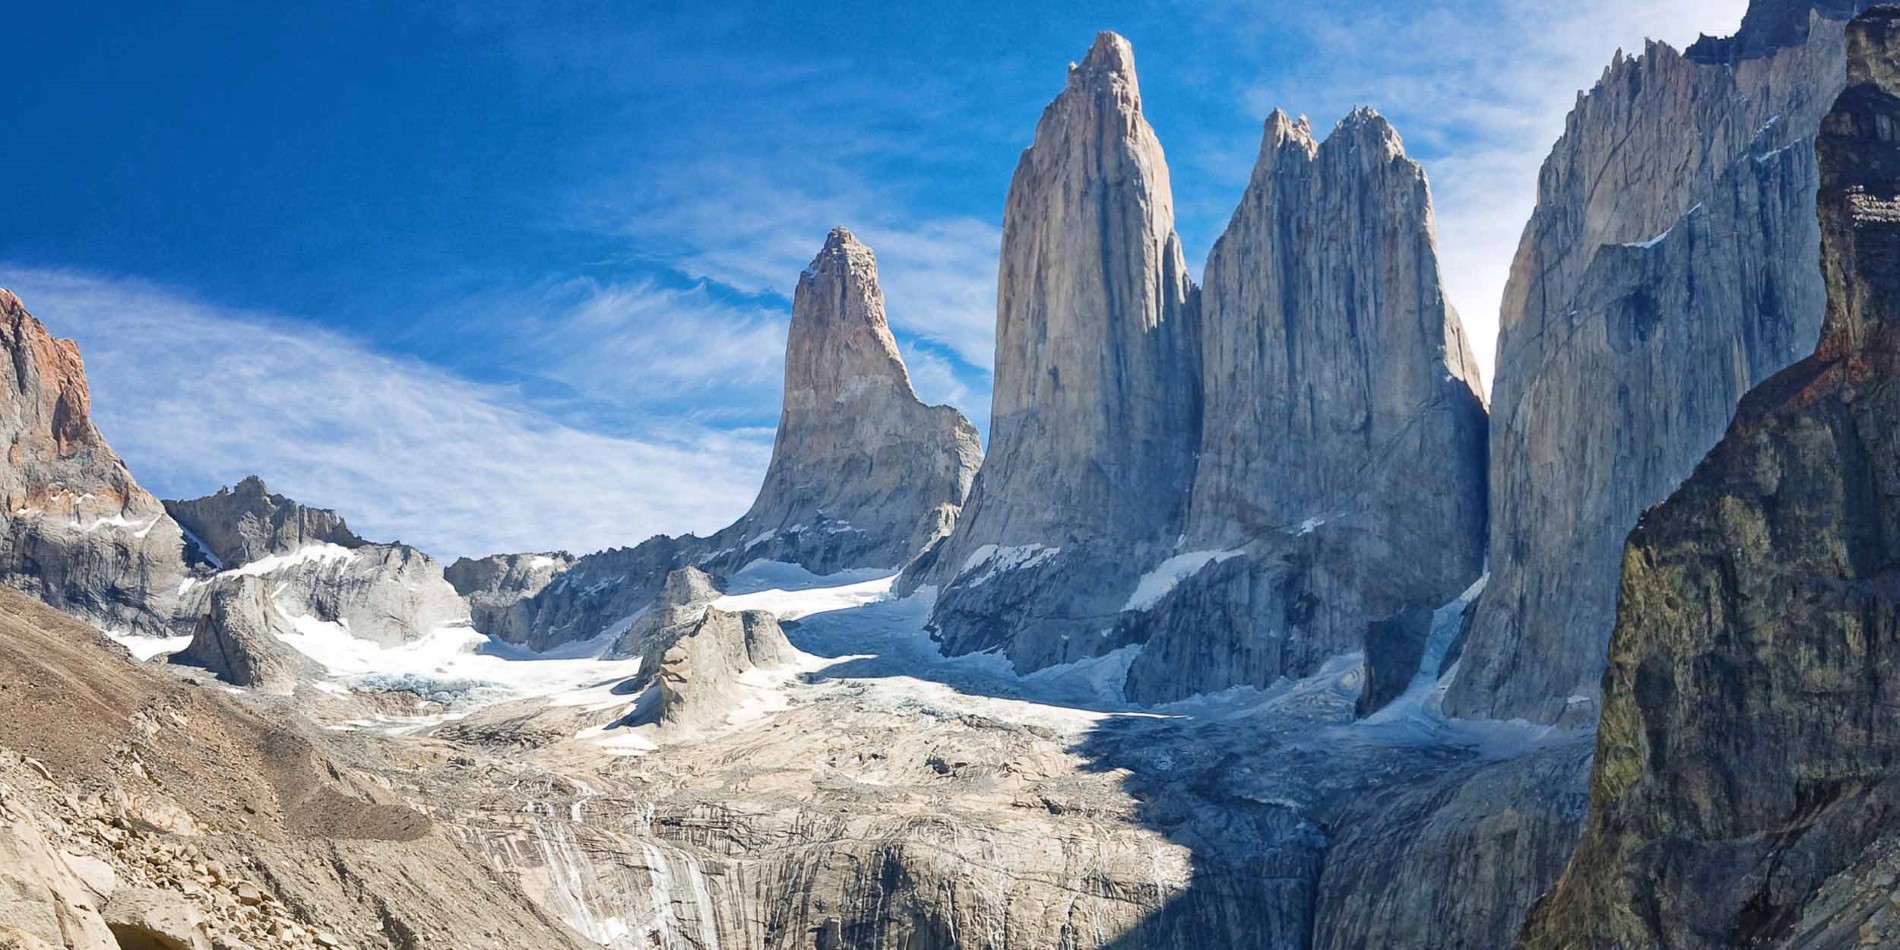 En kanjon med Torres del Paine nationalpark i bakgrunden